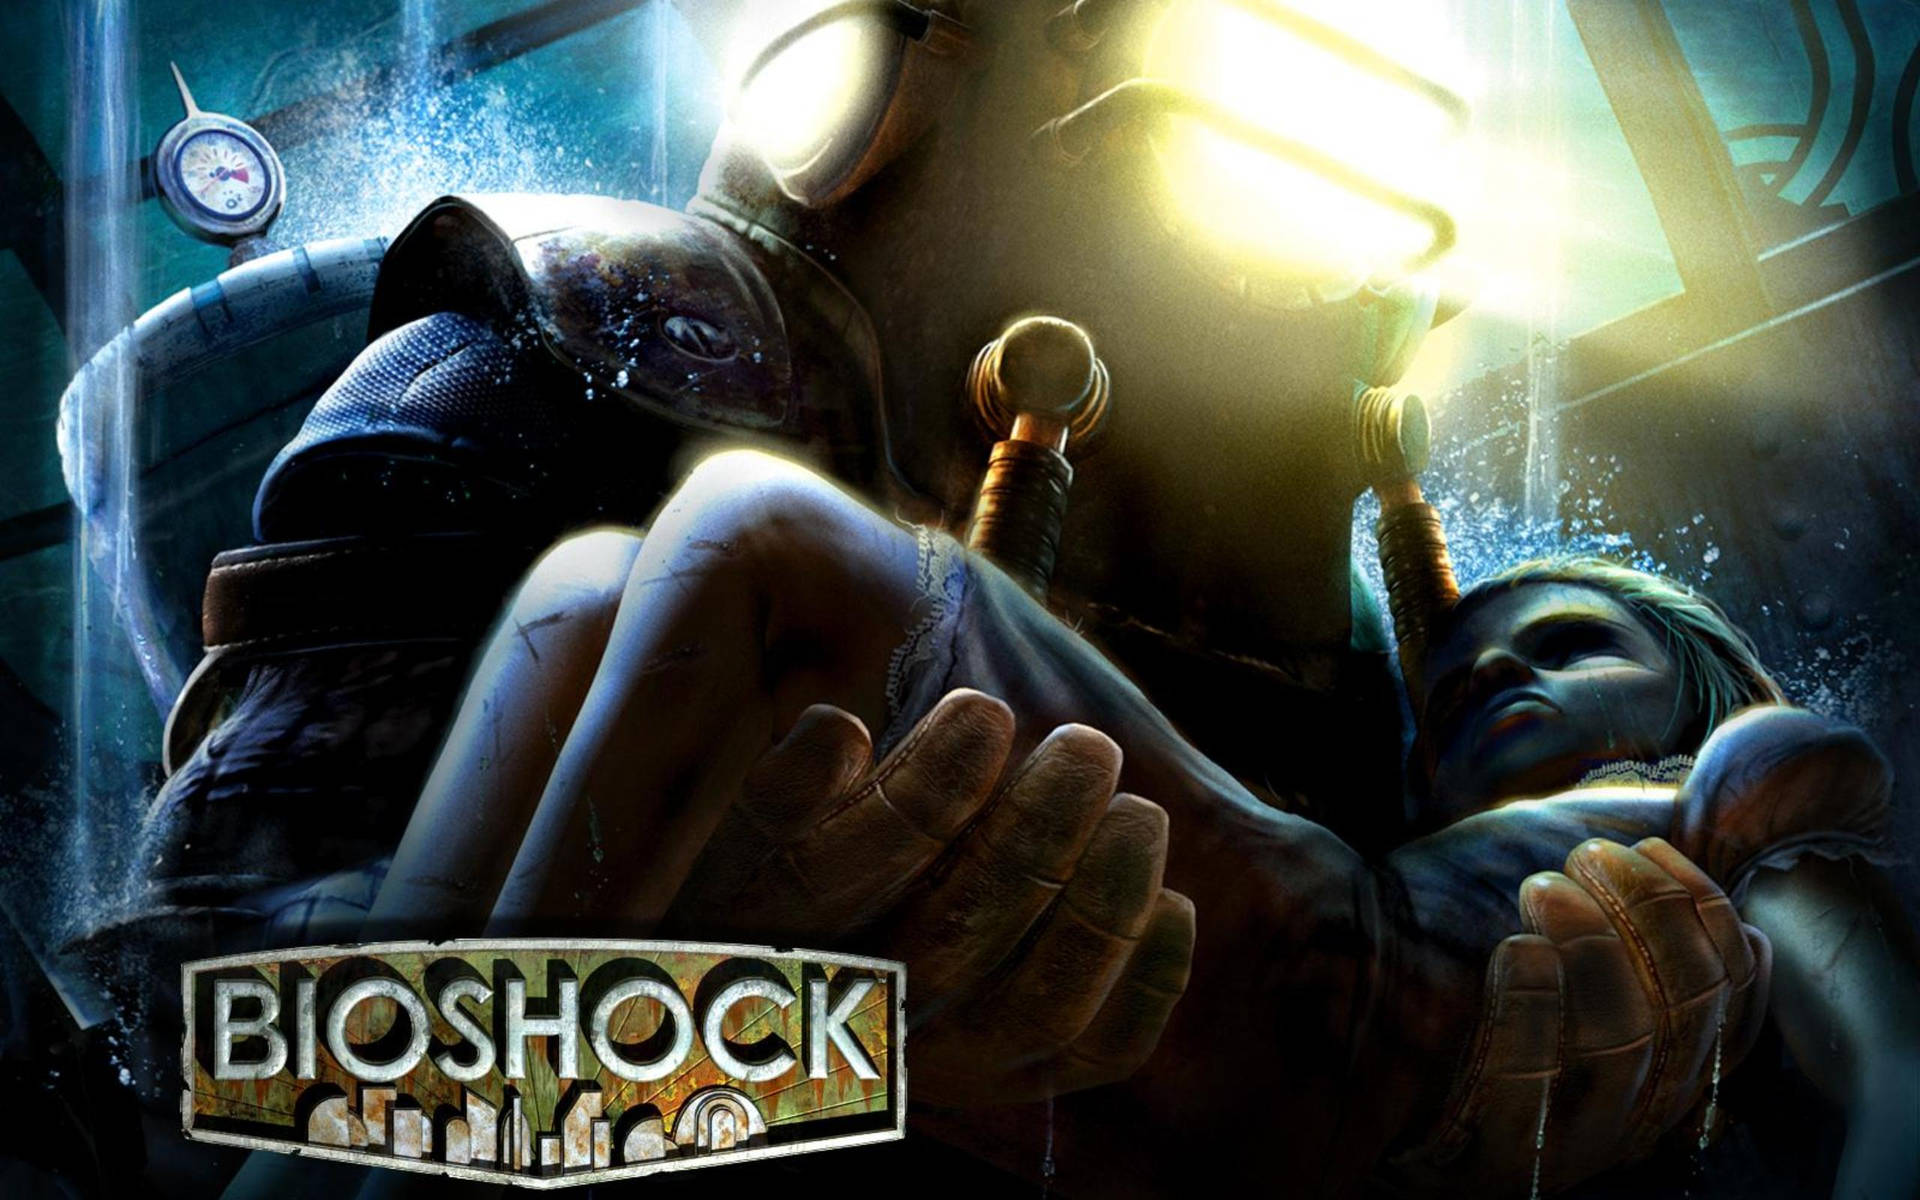 Bioshock4k Rädda Lillasyster Wallpaper